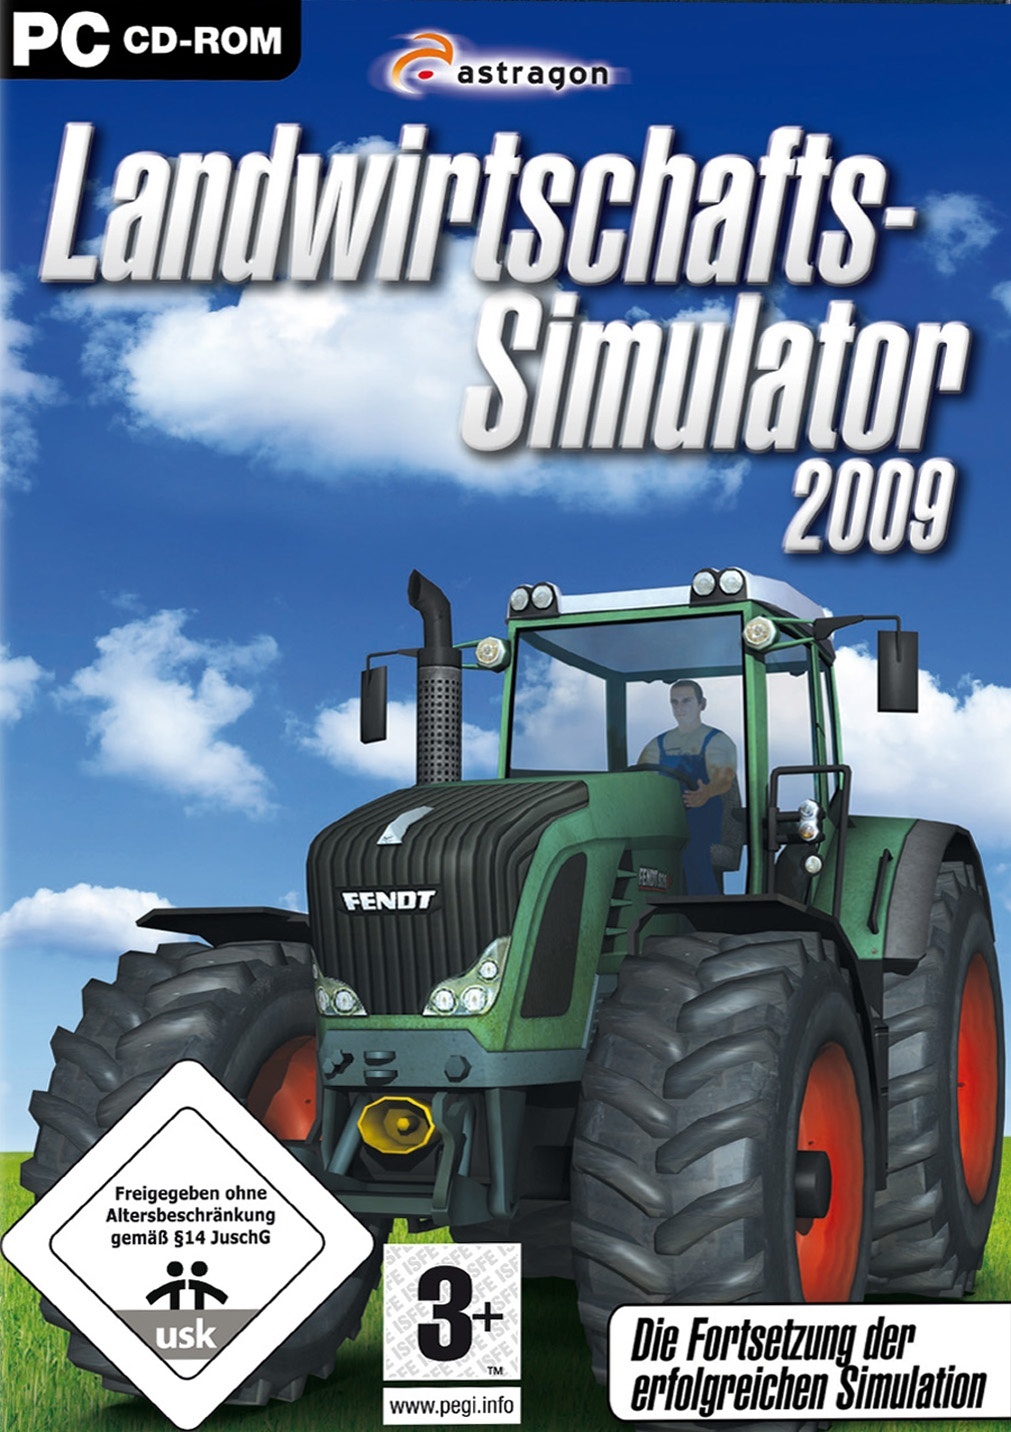 Landwirtschafts-Simulator 2009 - Release, News, Systemanforderungen